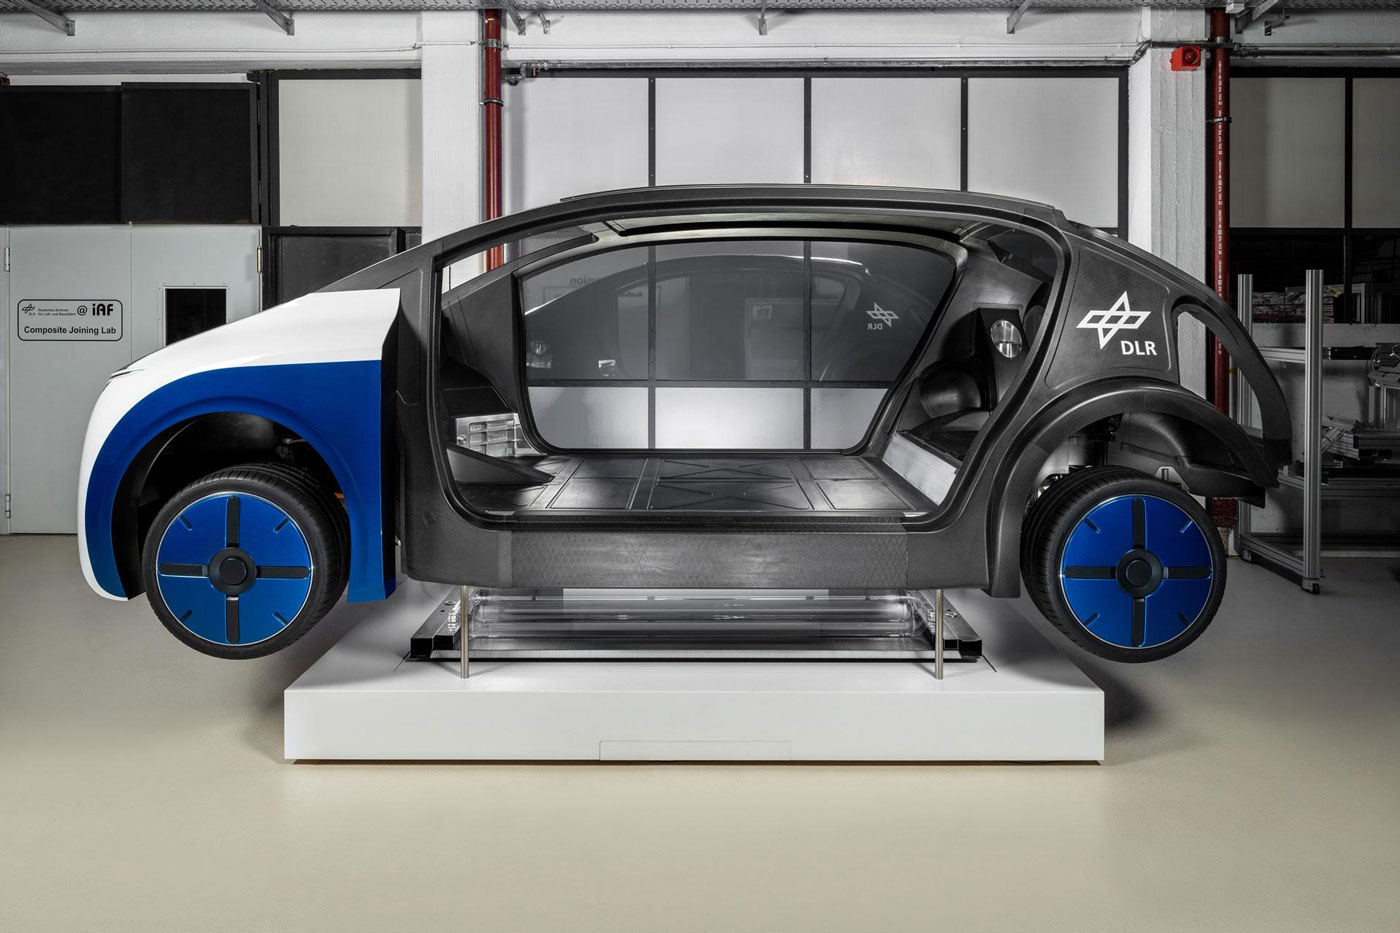 La NASA allemande présente une voiture hydrogène à grande autonomie